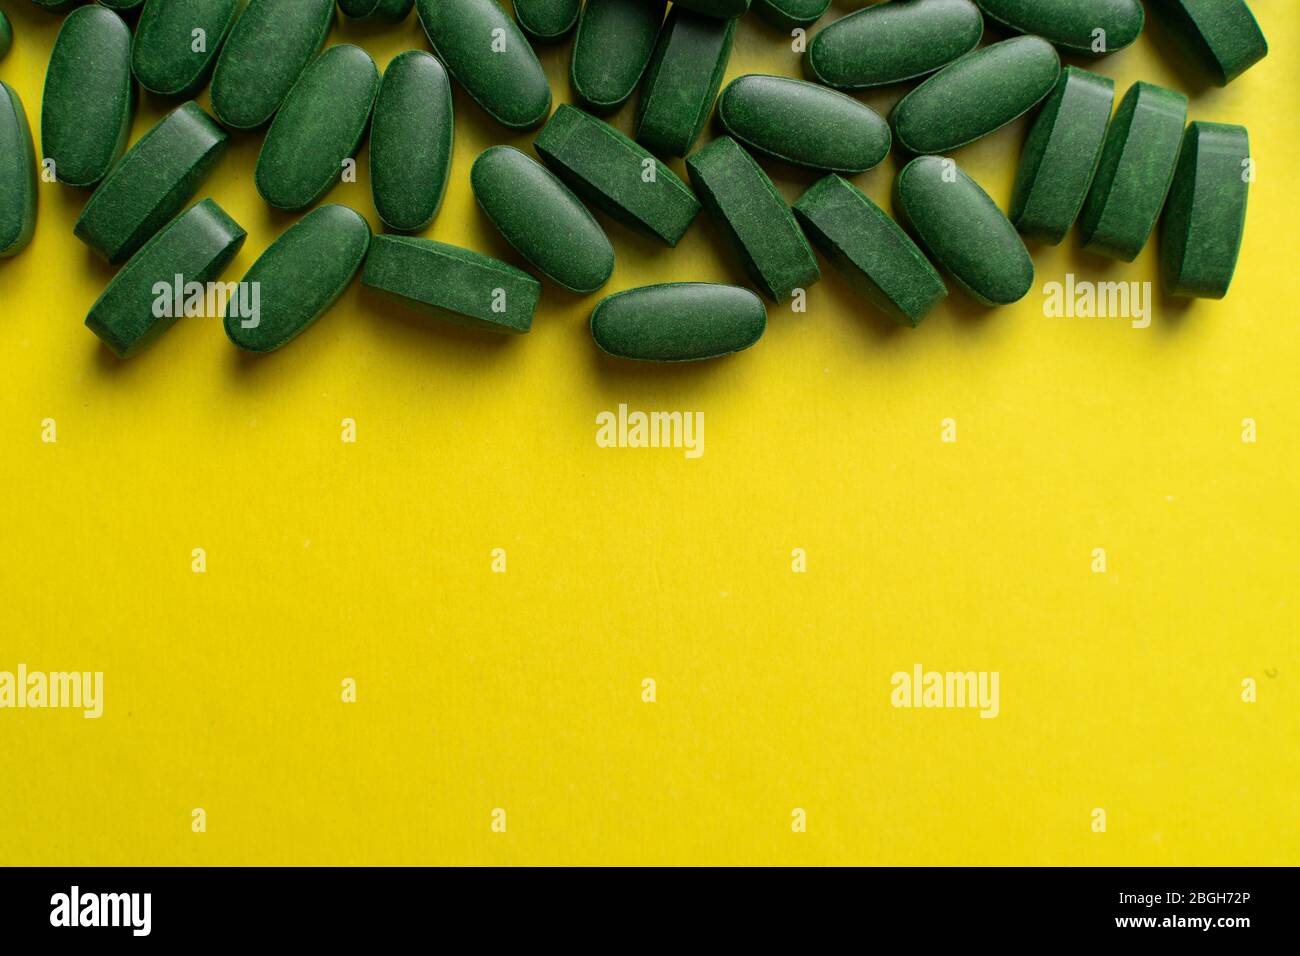 pilules vertes chlorella sur fond jaune. suppléments nutritionnels pour un régime sain Banque D'Images